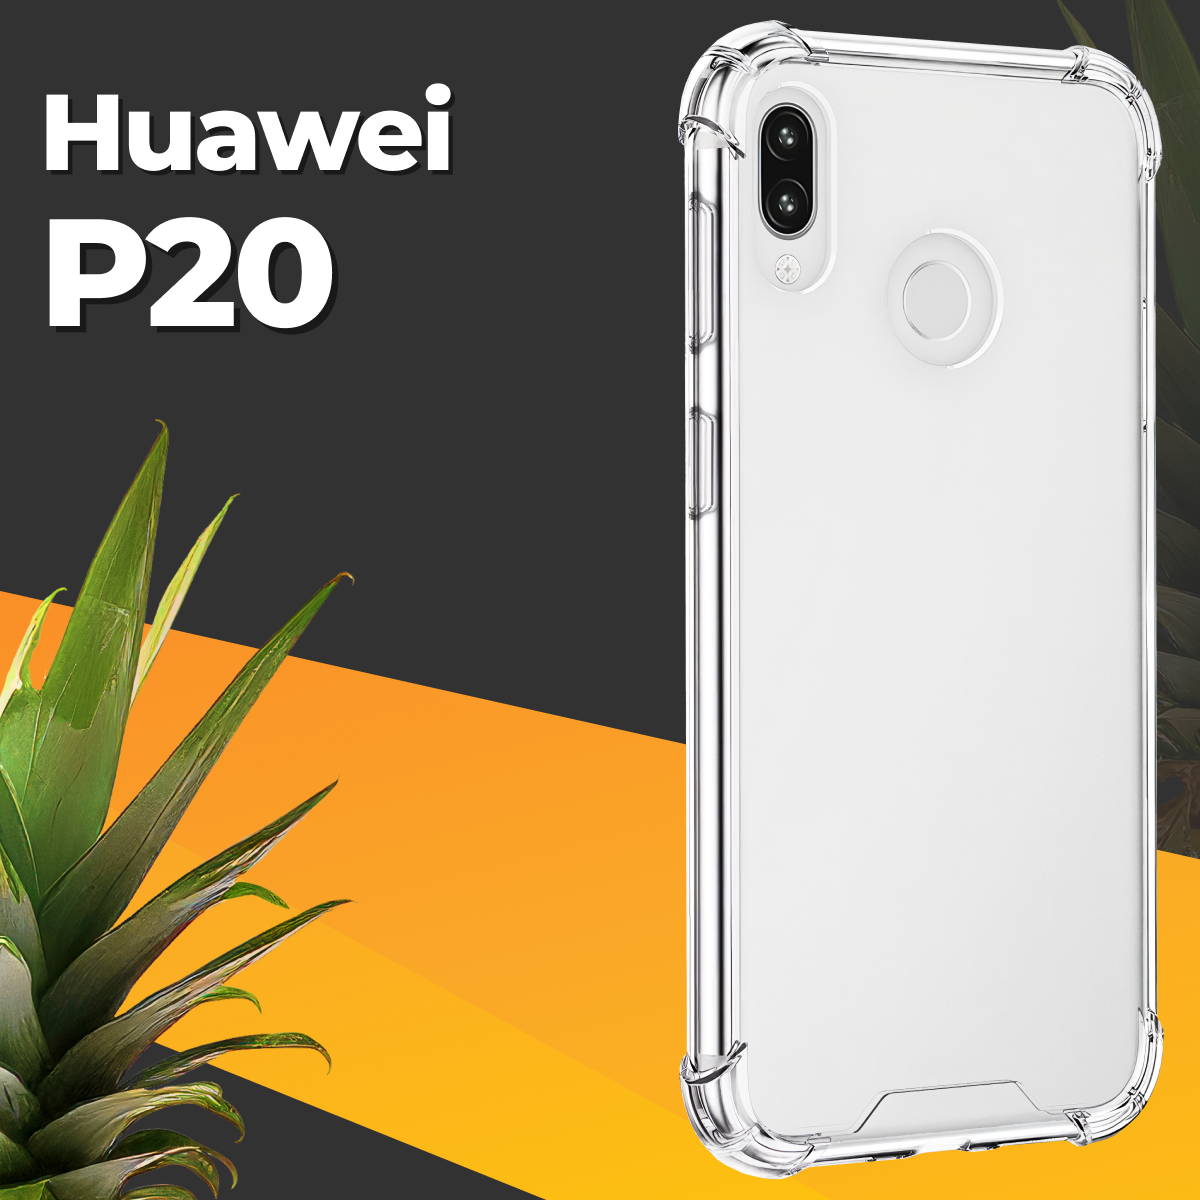 Противоударный силиконовый чехол для телефона Huawei P20 / Ударопрочный чехол для смартфона Хуавей П20 с бортиками и защитой углов / Прозрачный